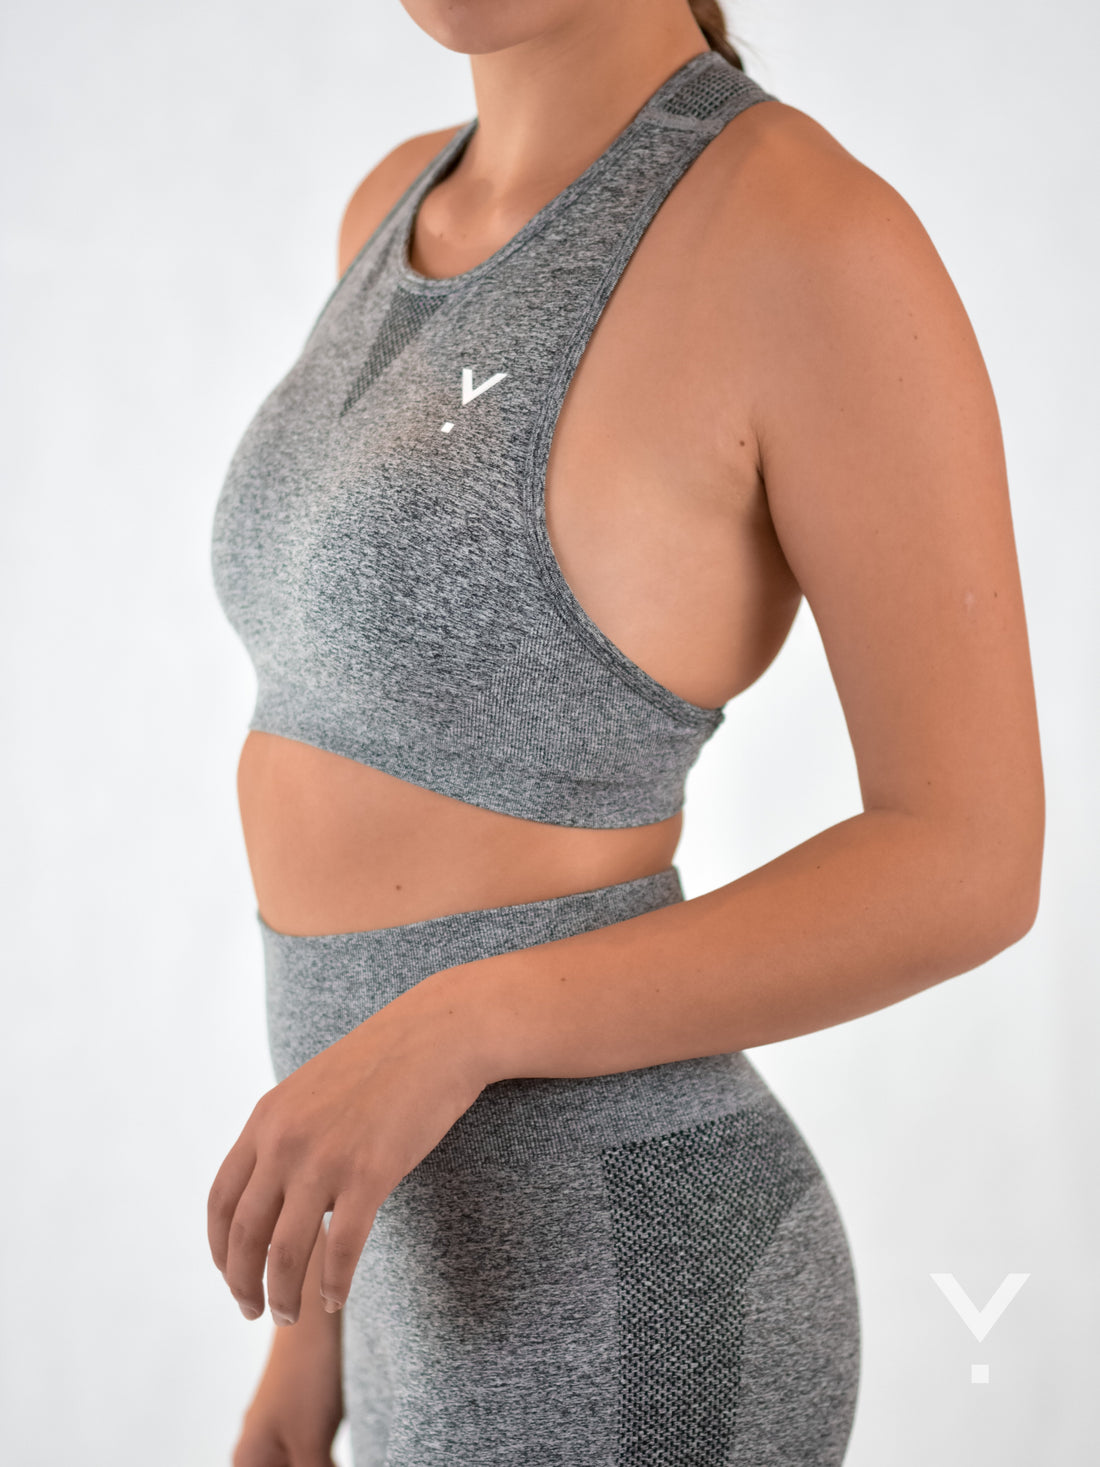 Women's Sports Bras - Crop Tops & Workout Wear